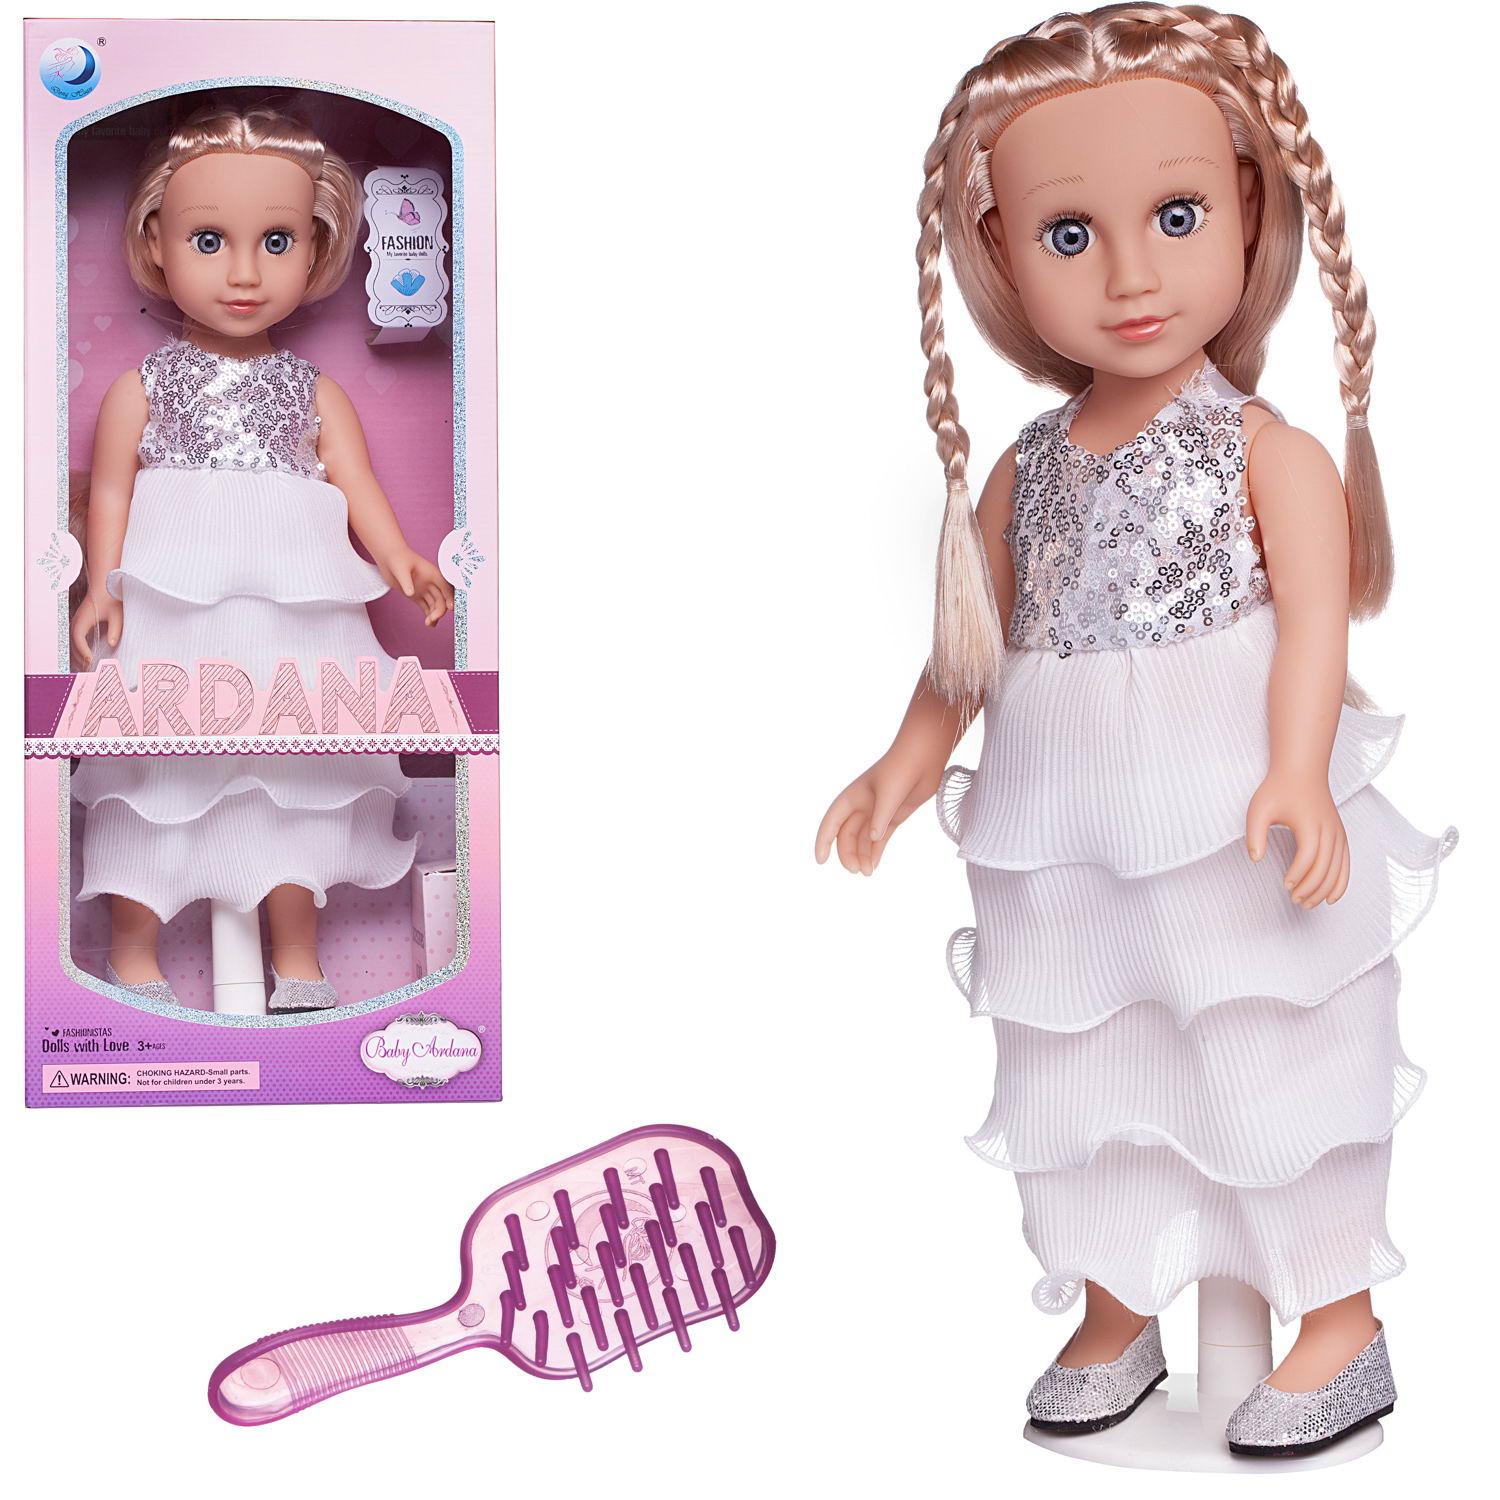 Кукла Junfa Ardana Baby в белом платье с серебристыми пайетами, 45 см, WJ-21816 кукла junfa ardana baby в белом платье с серебристыми пайетами 45 см wj 21816